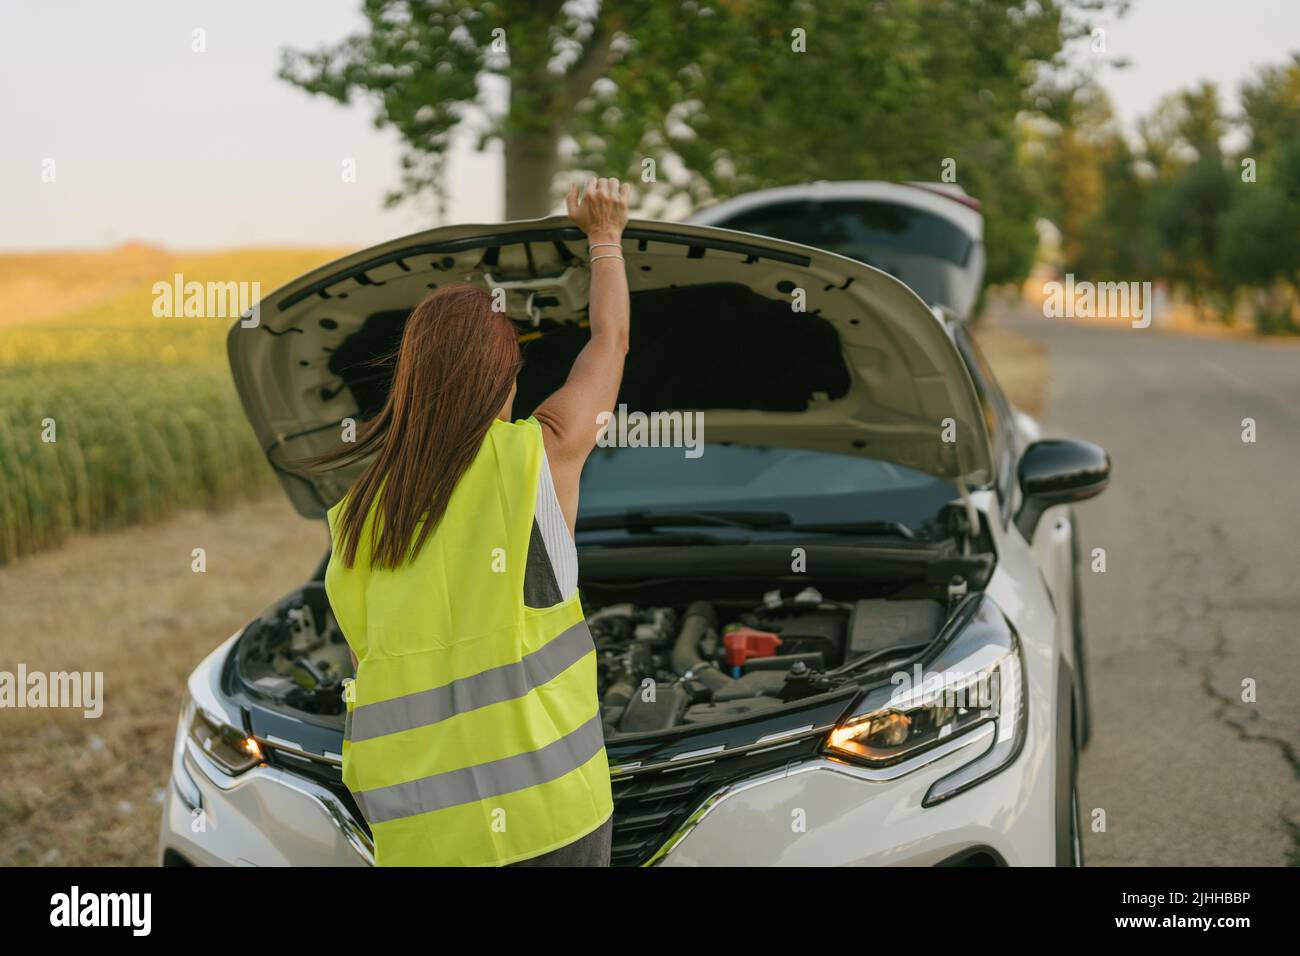 vista trasera de una mujer con un chaleco reflectante que abre el capó de su coche Foto de stock